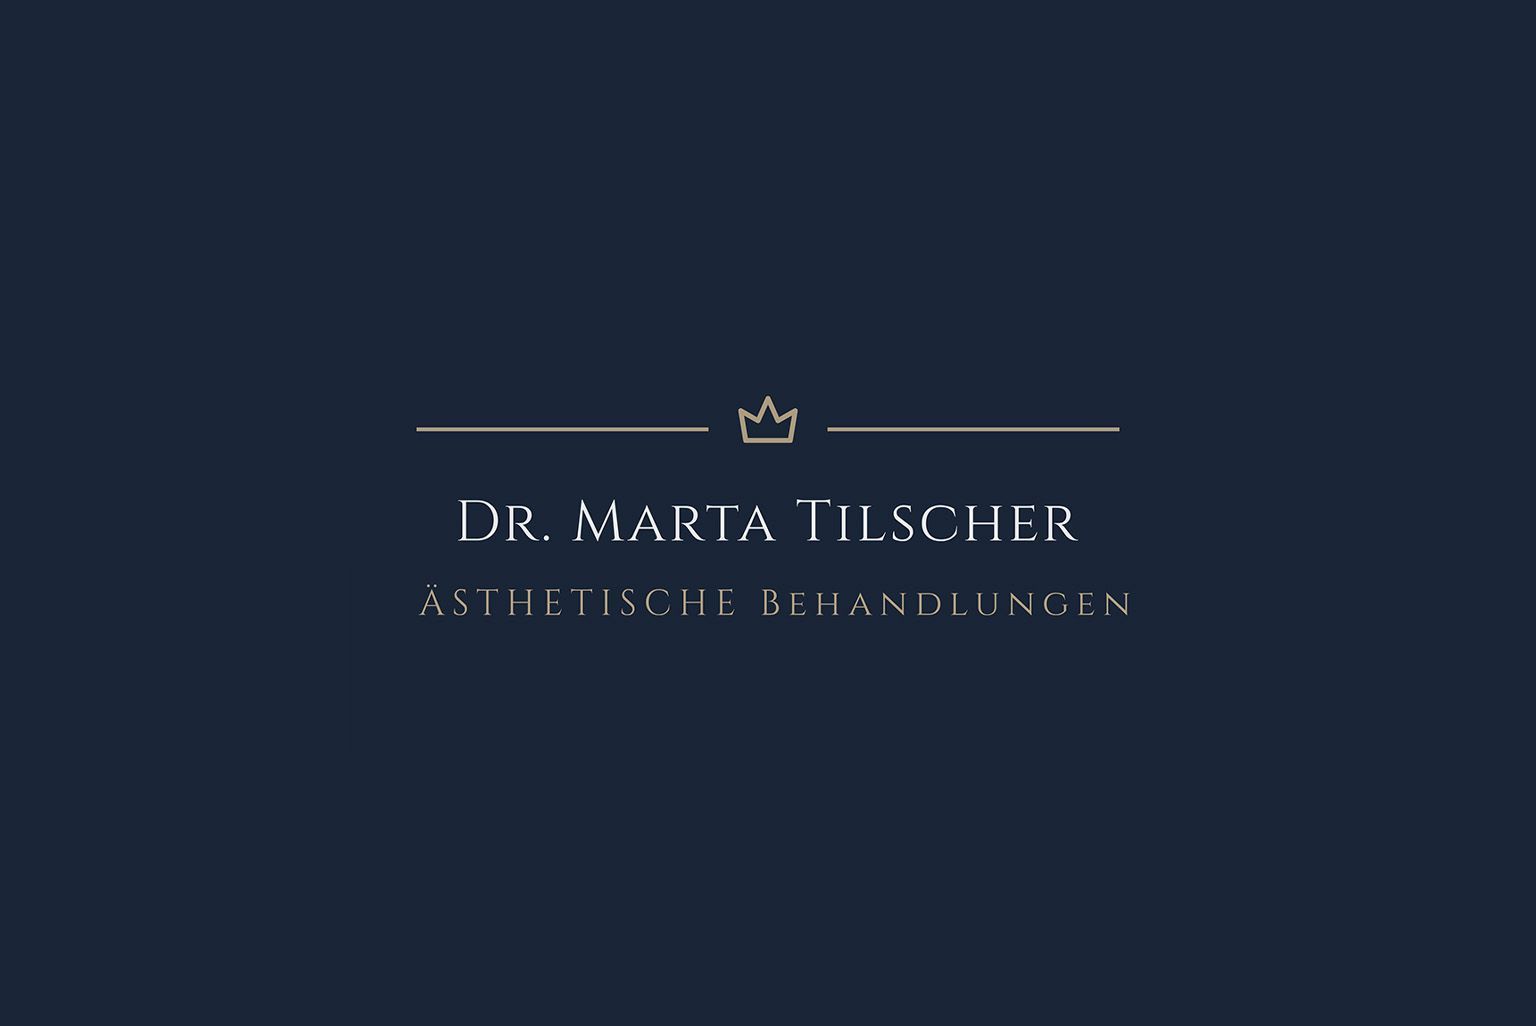 Dr. Marta Tilscher